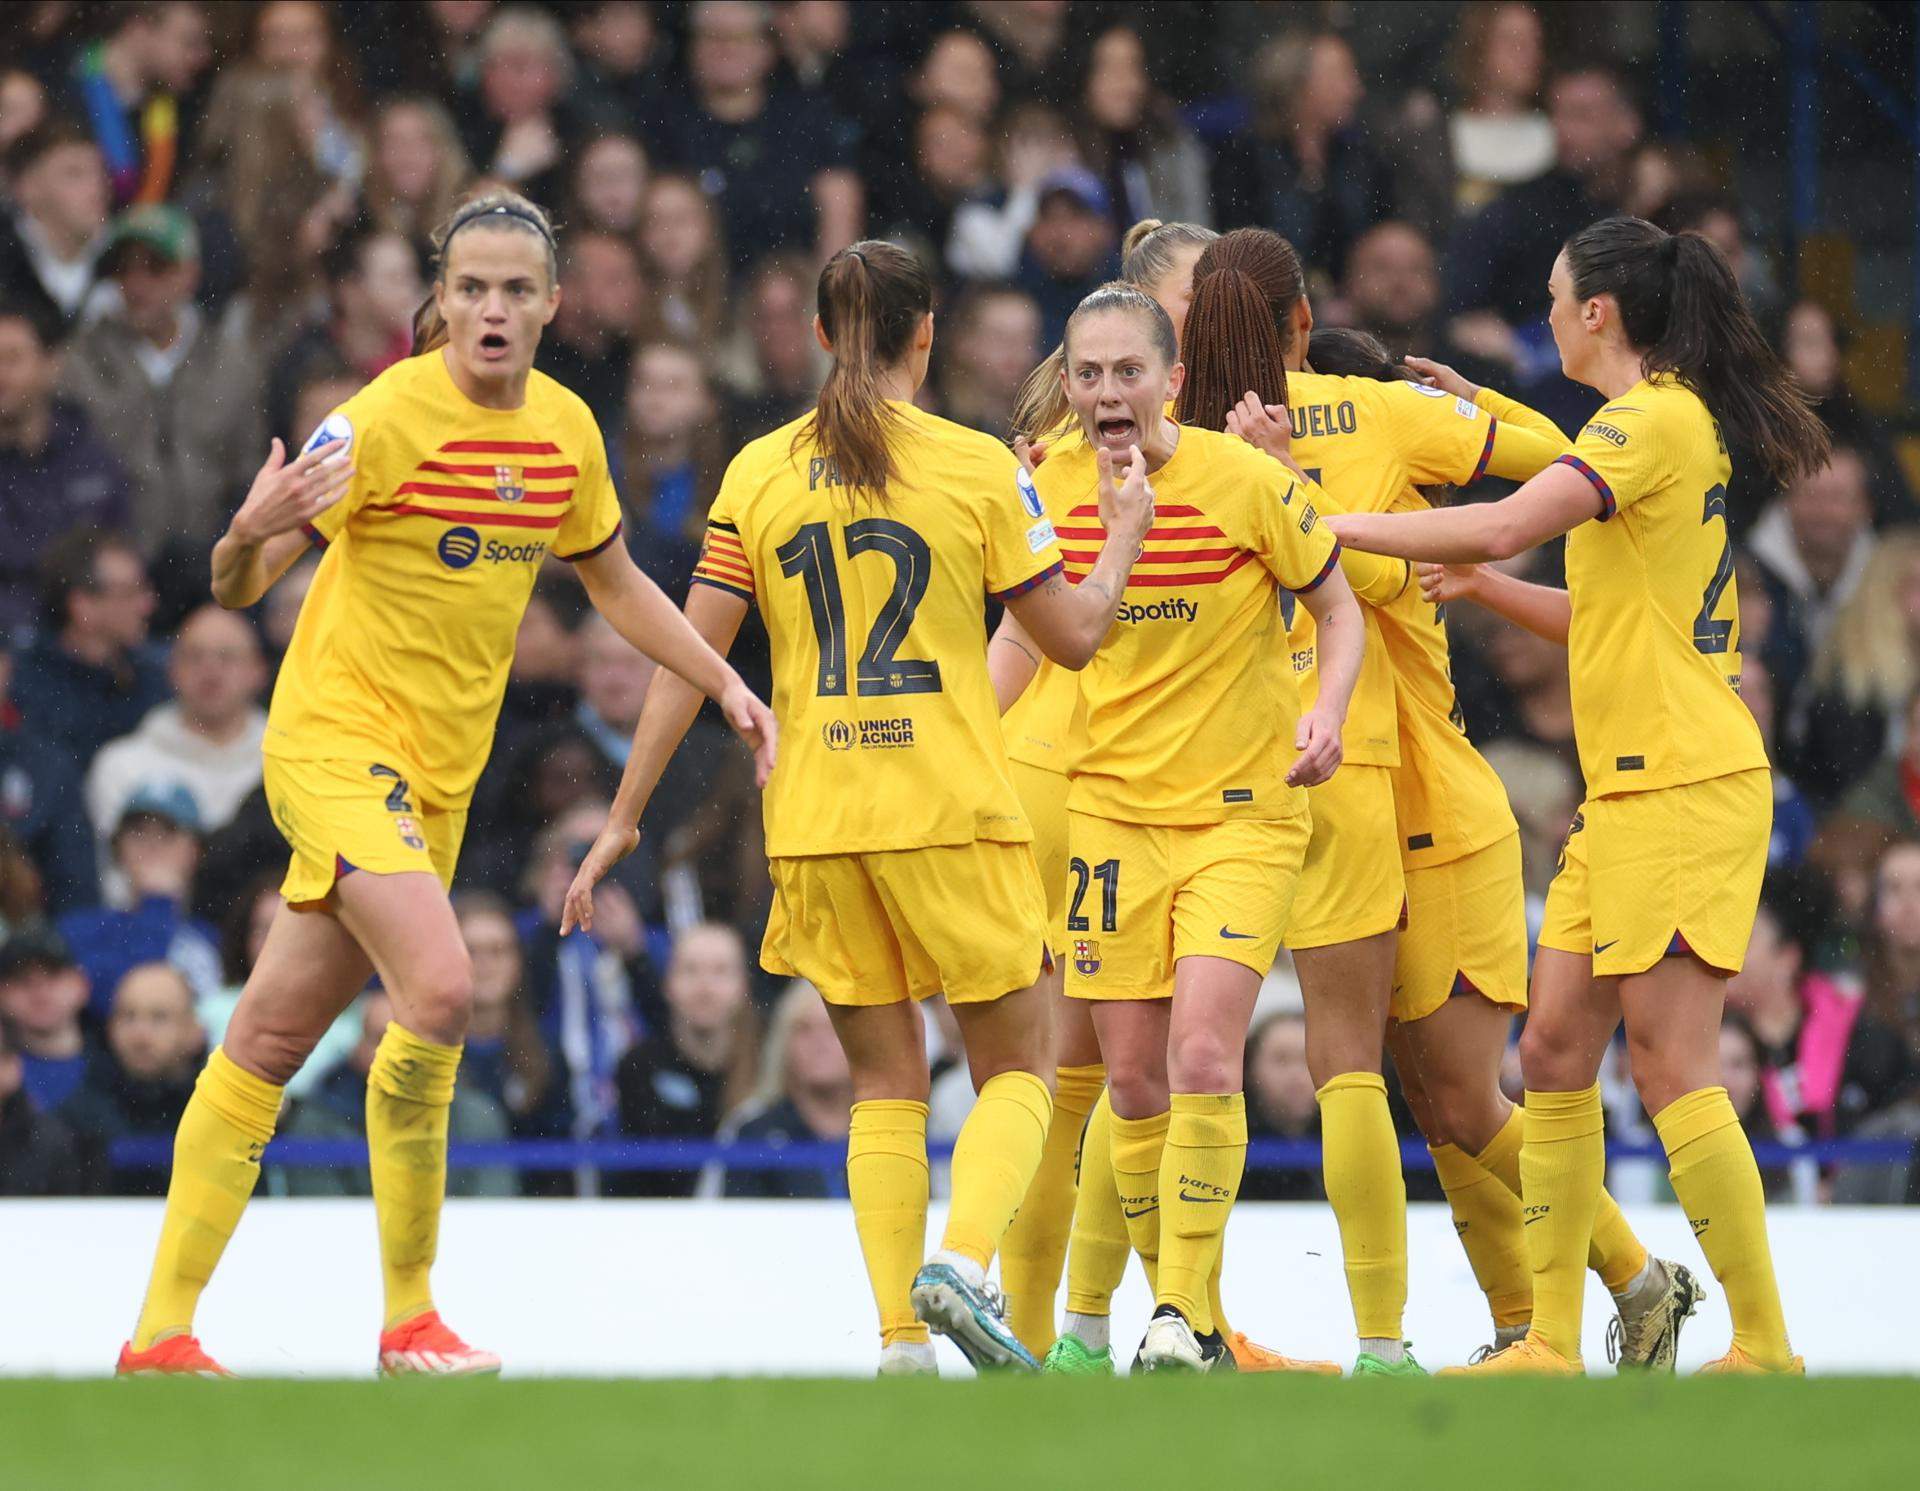 Remuntada històrica del Barça contra el Chelsea per tornar a la final de la Champions femenina (0-2)